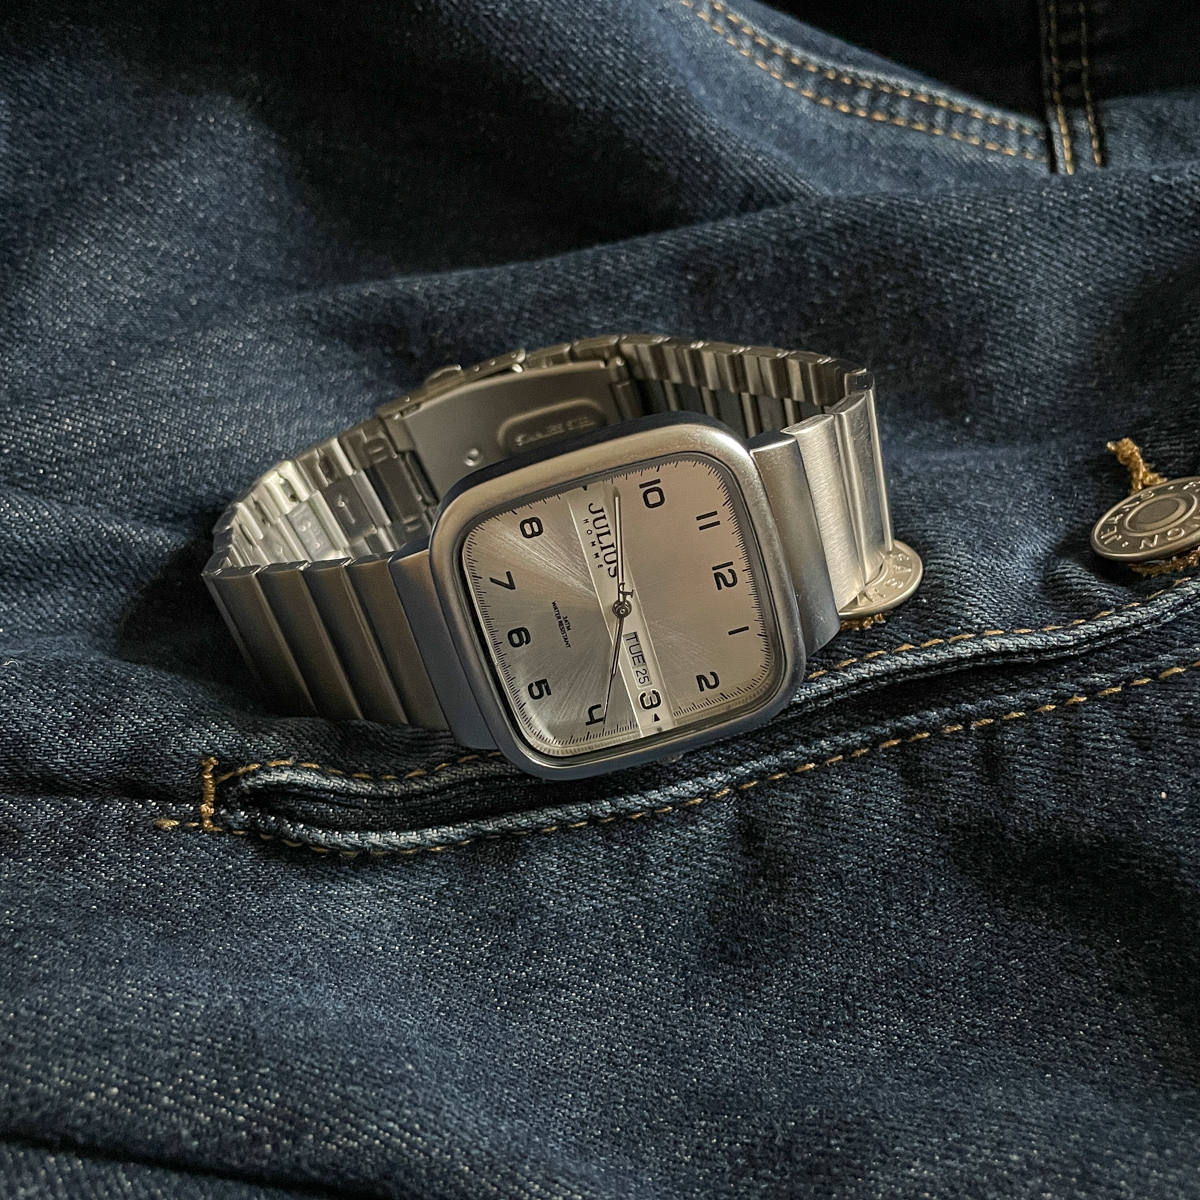 スクエア高級腕時計メンズブランド本物の機械式時計メンズワームホールコンセプトメンズ腕時計ファッショントレンドメンズ腕時計